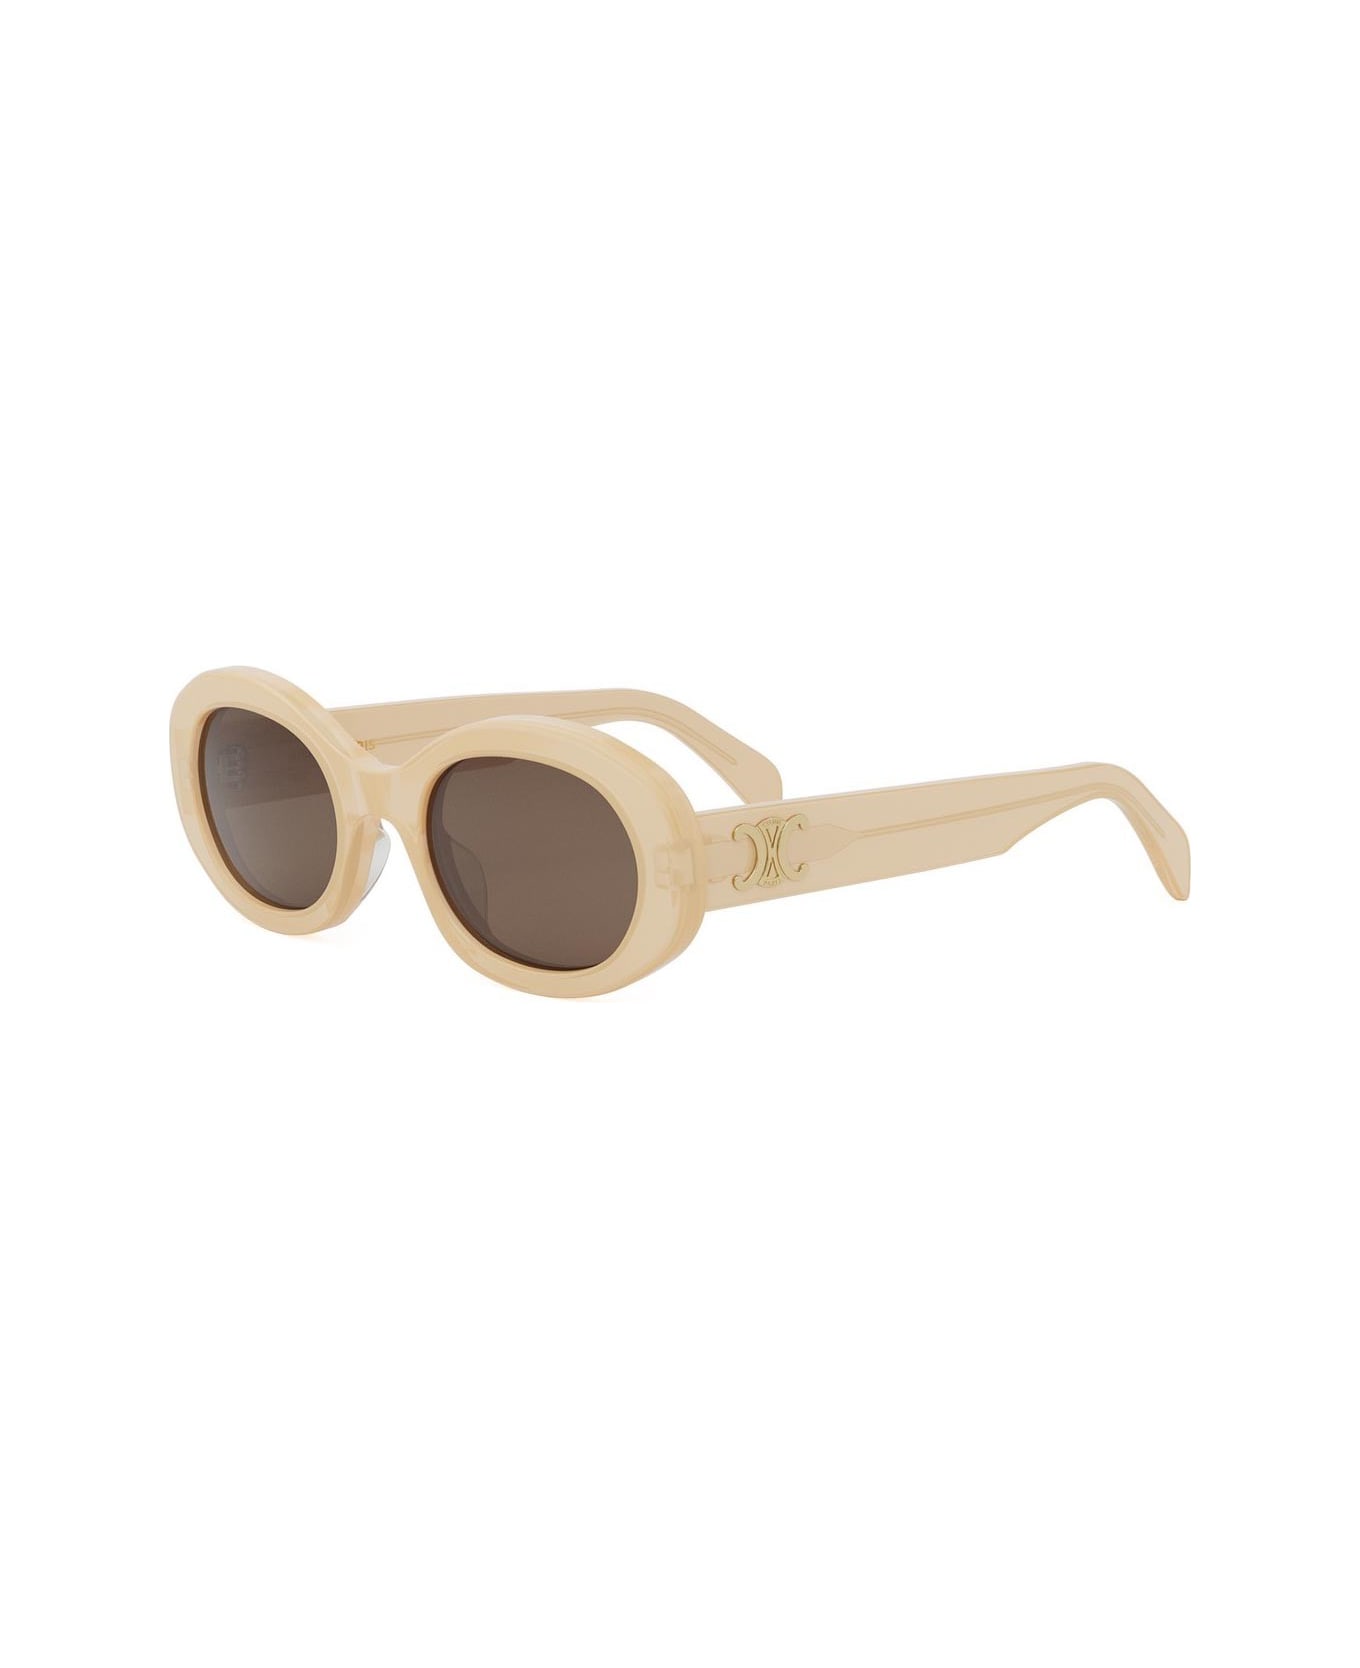 Celine Sunglasses - Cipria/Marrone サングラス